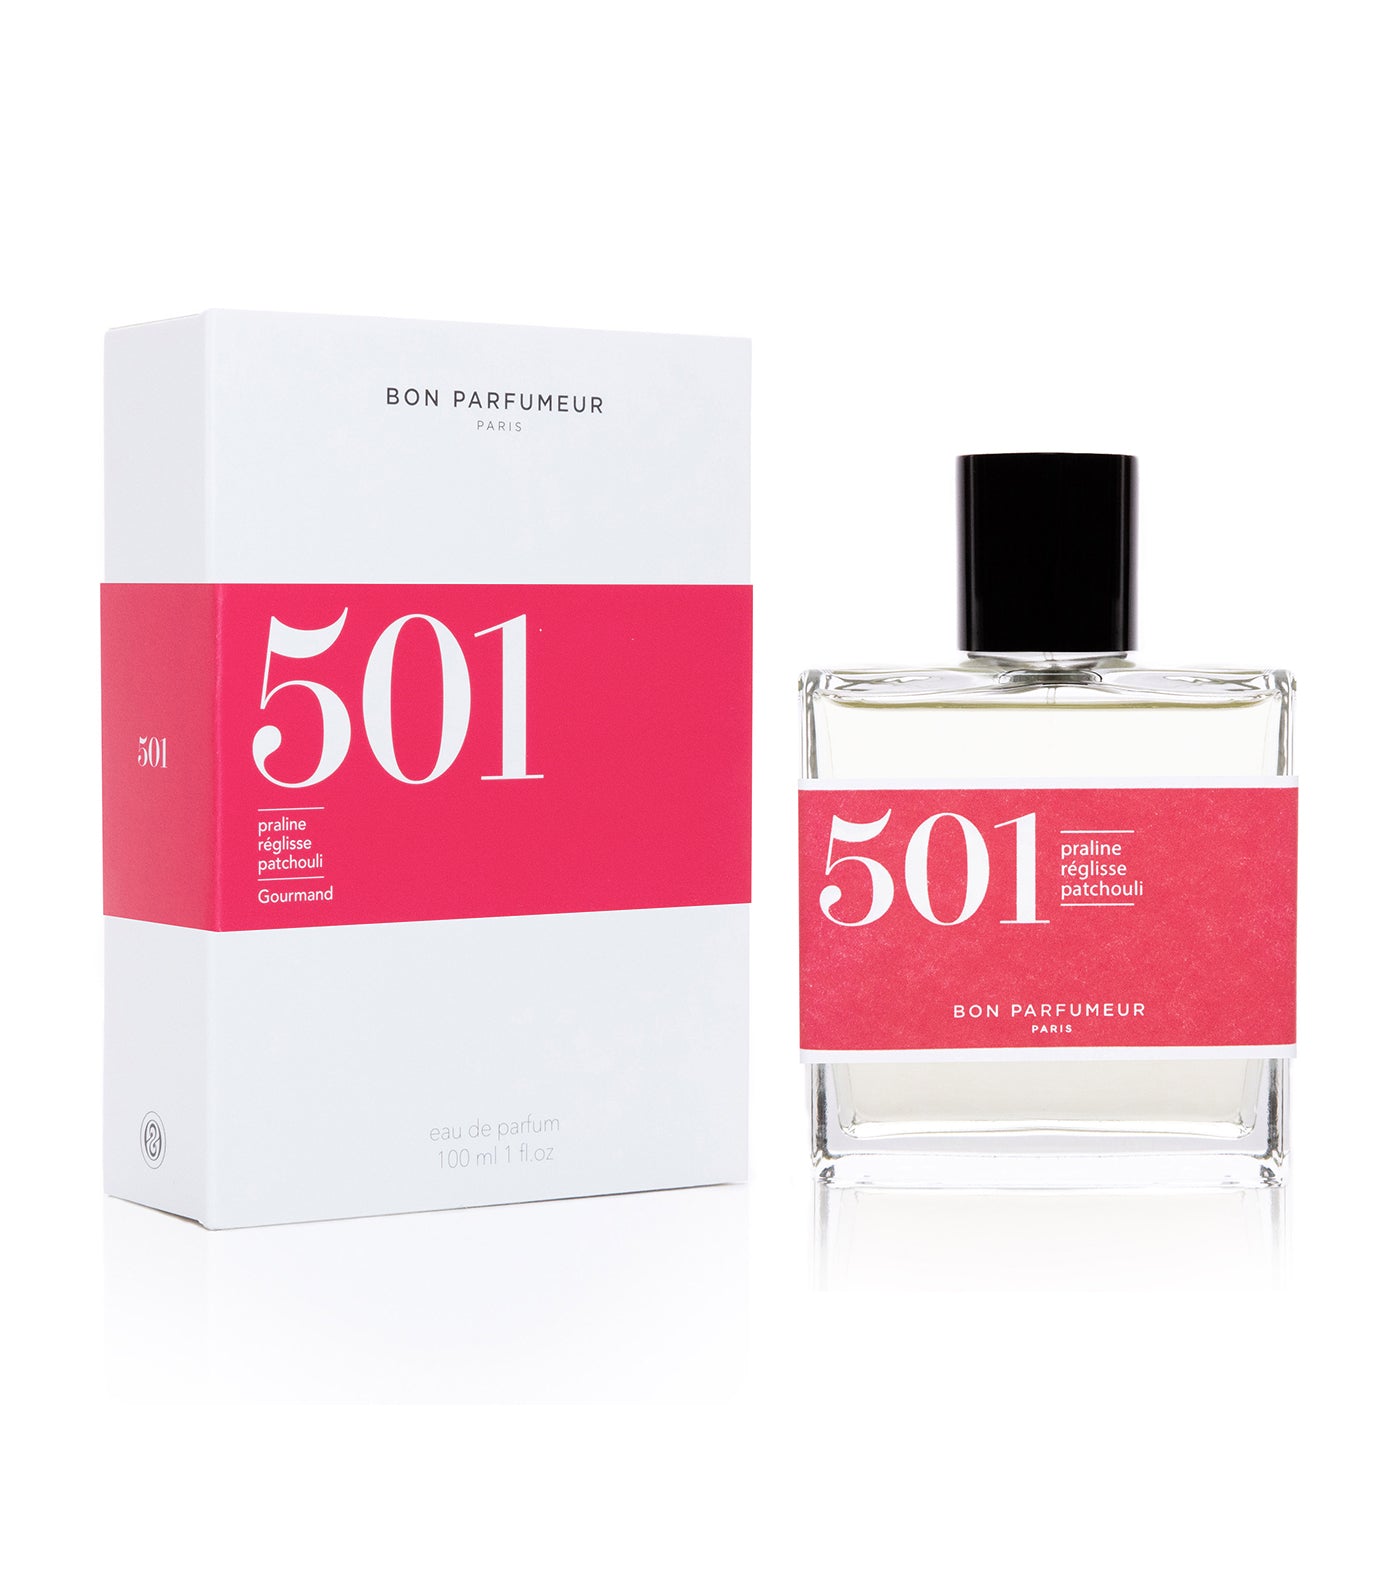 Eau de parfum 501 : praline, licorice and patchouli